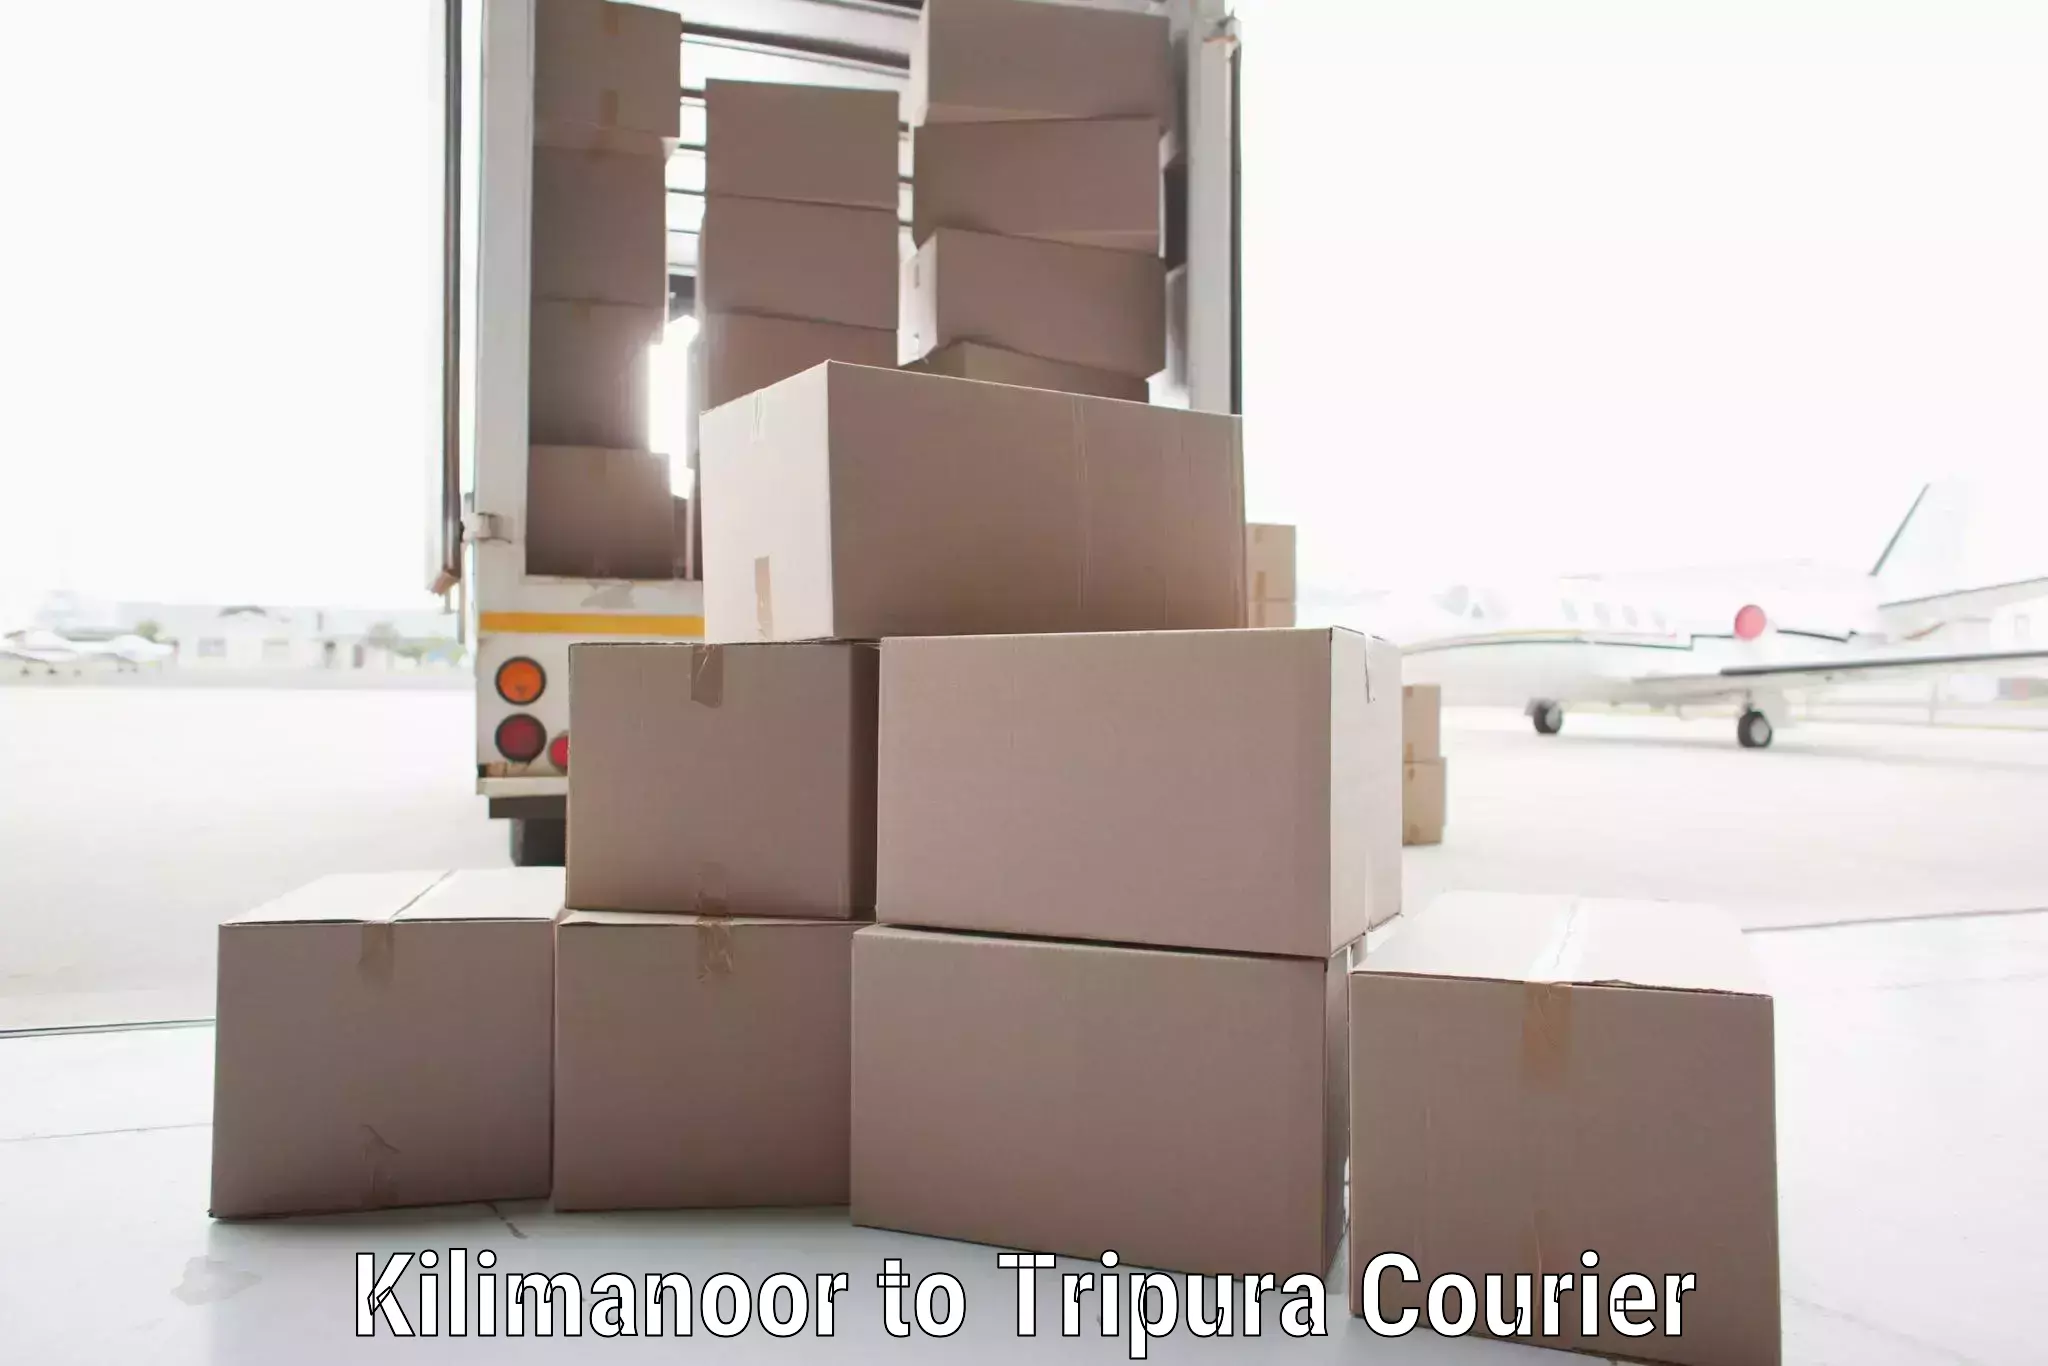 Door-to-door freight service Kilimanoor to Tripura